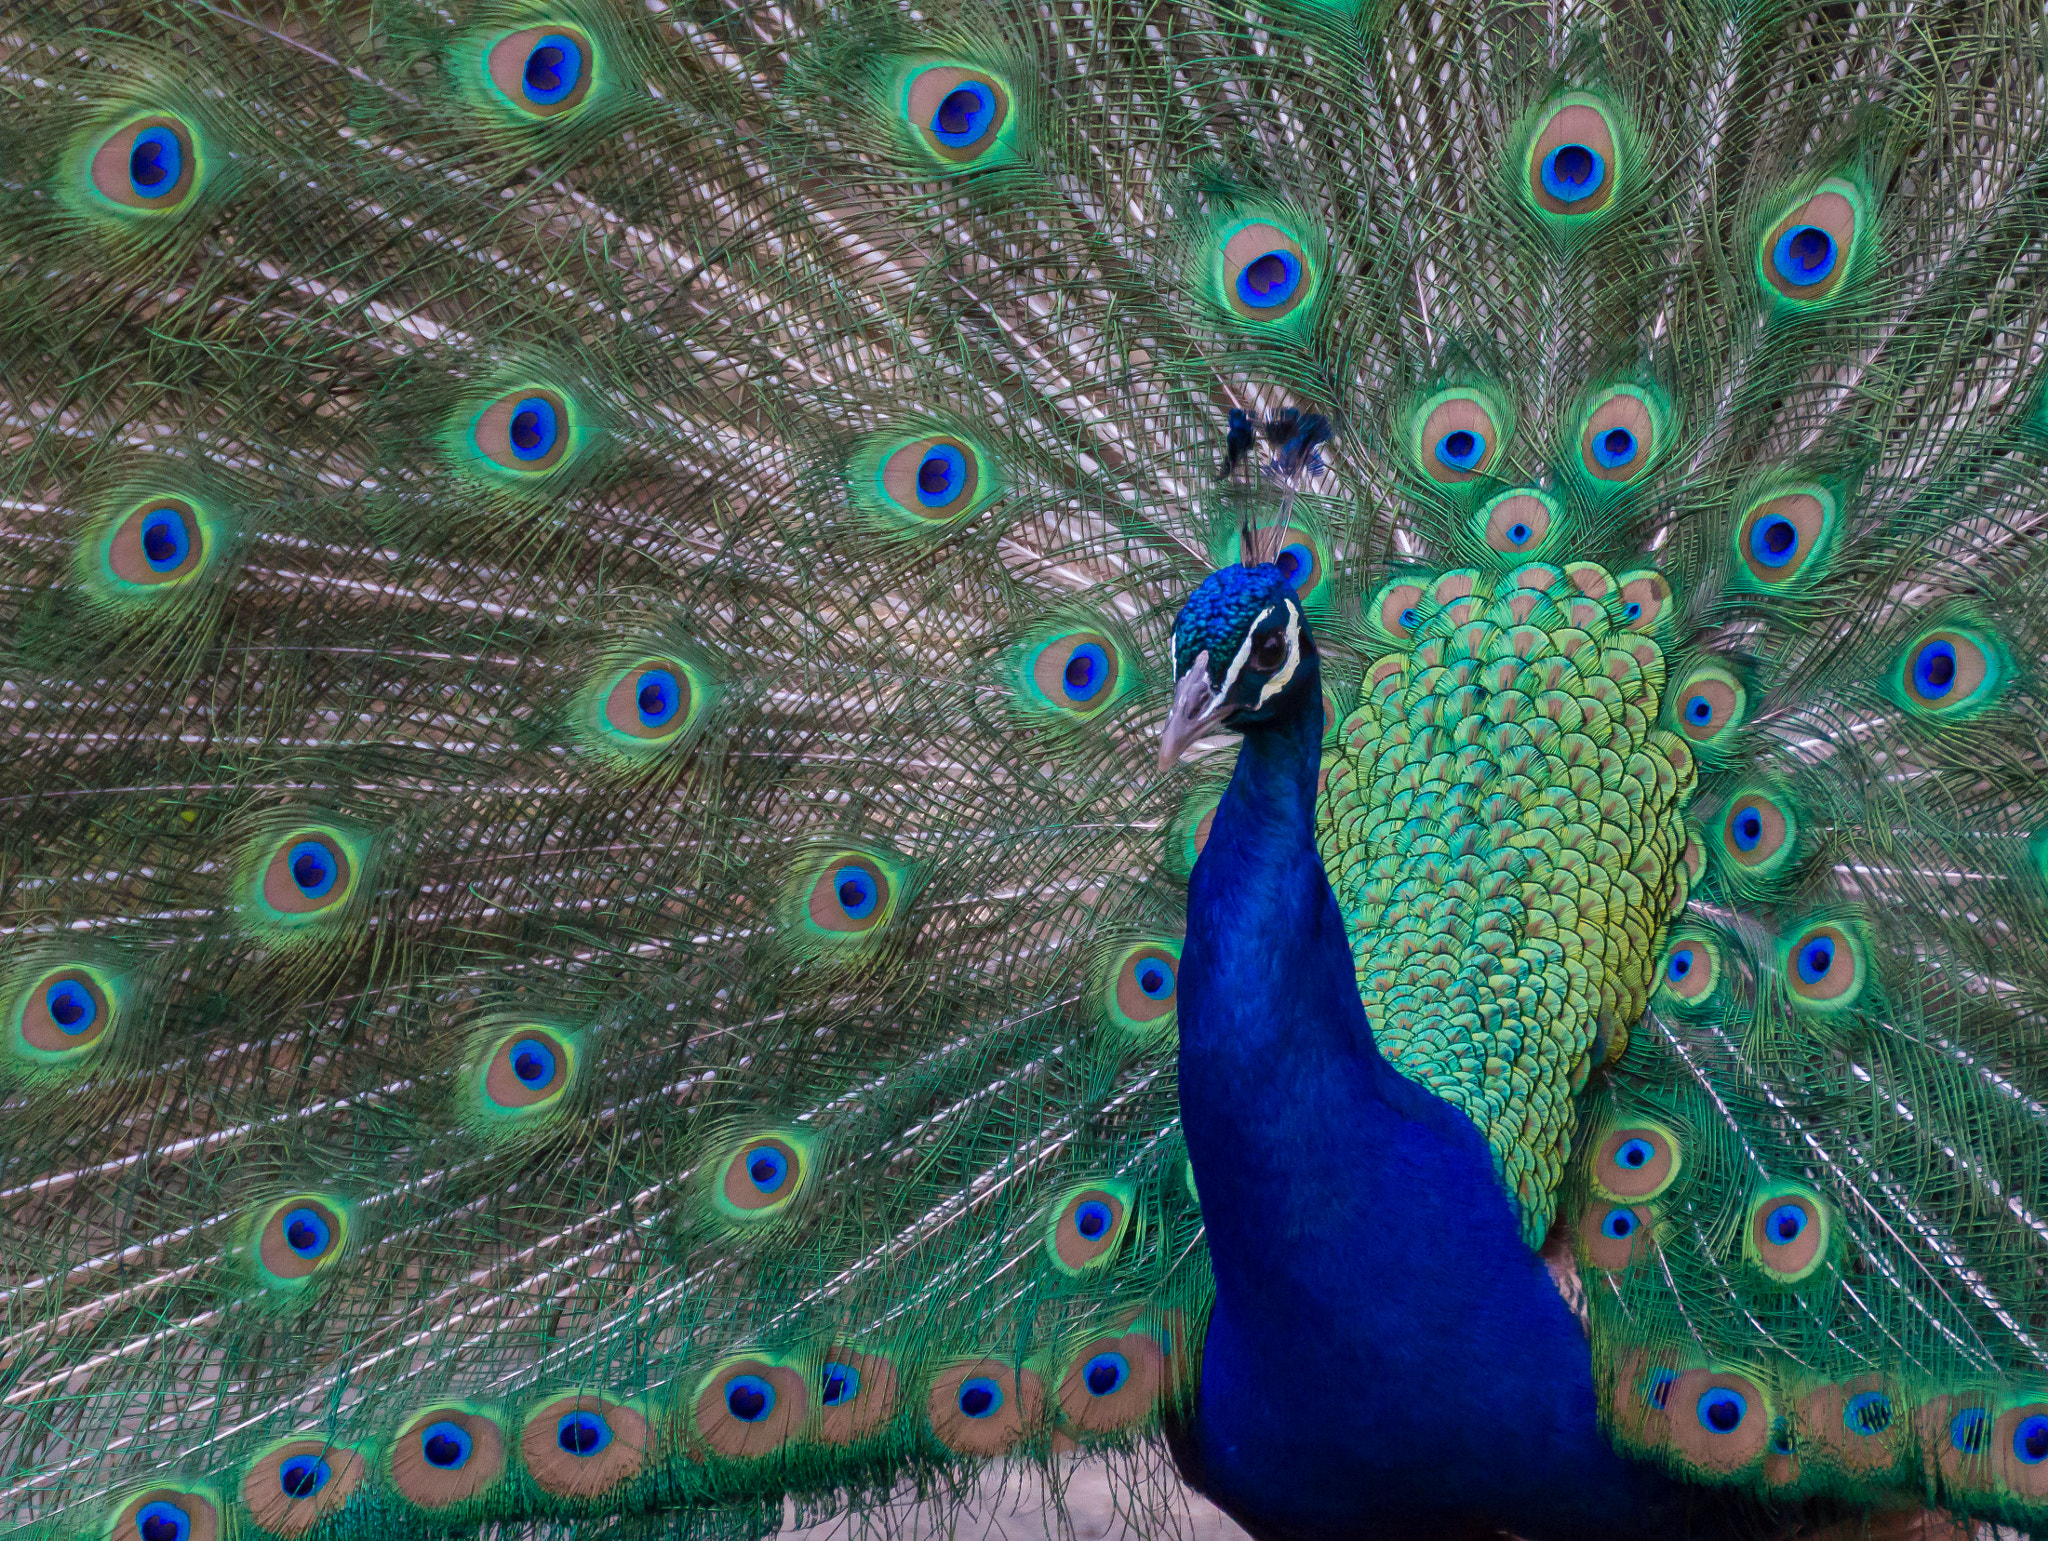 Canon EOS 60D sample photo. Pretty peacock photography